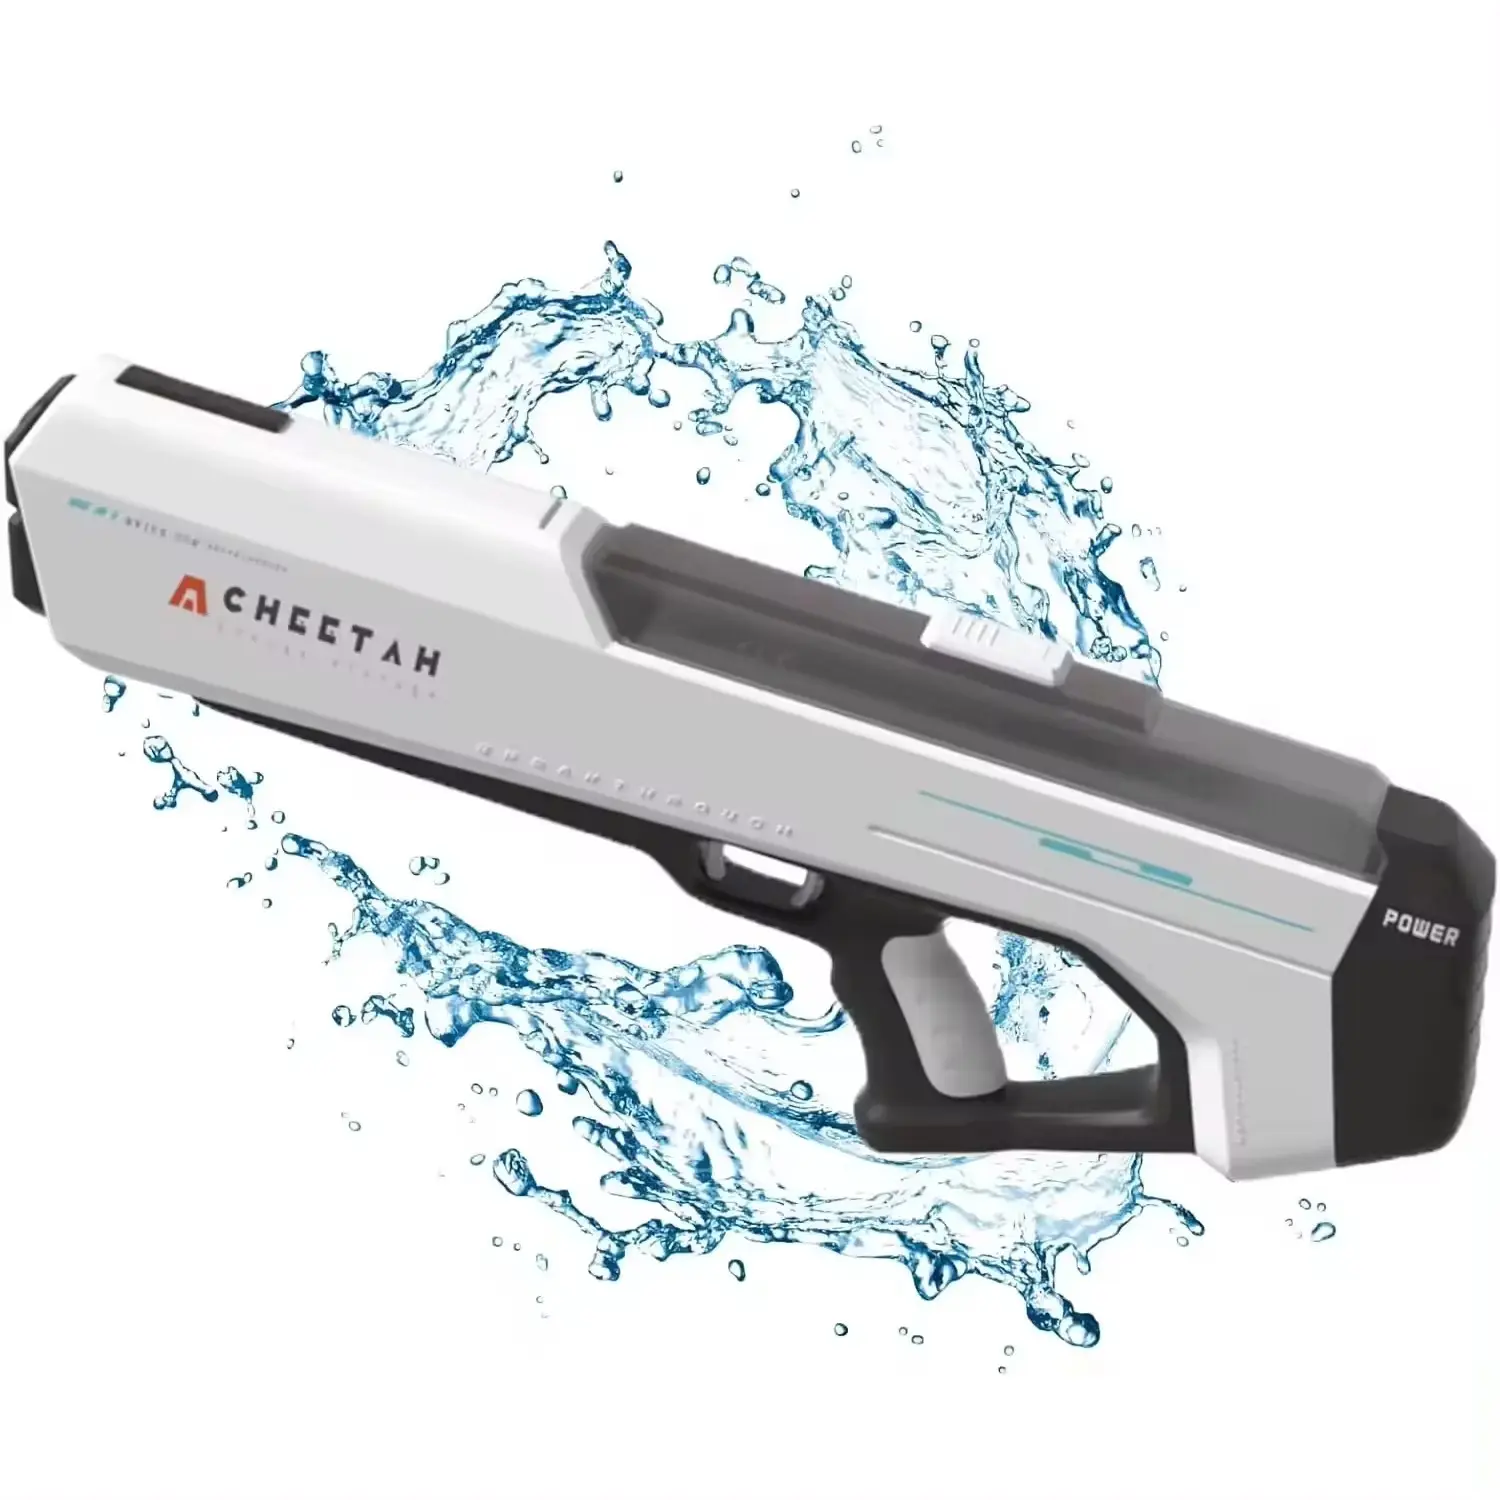 Hot Selling Electric Water Gun Spielzeug für Erwachsene 32 FT Shooting Range Super Soaker Wasser pistolen große Kapazität